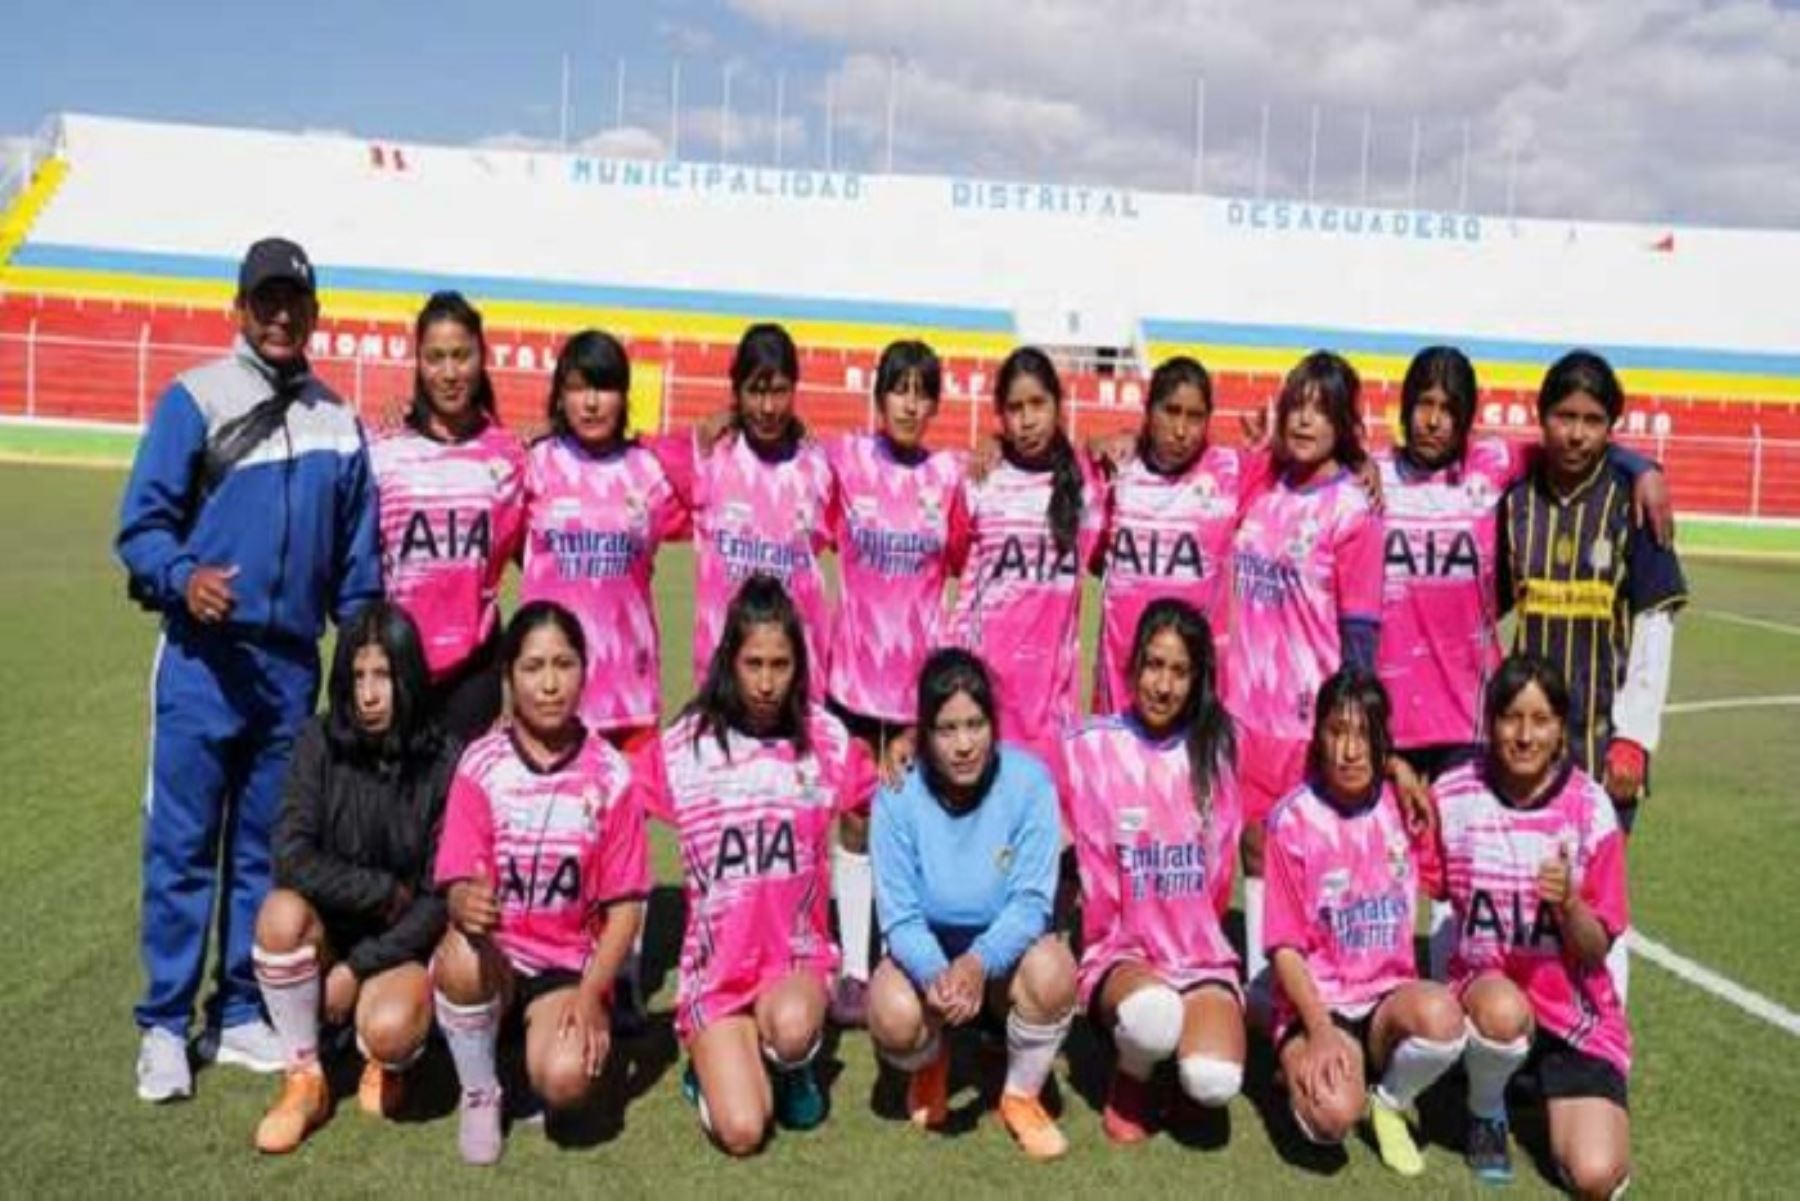 La institución educativa está ubicada en el centro poblado de Sicuyani del distrito de Zepita, en la provincia puneña de Chucuito, y sus jugadoras derrotaron por 1 a 0 a la oncena de la IE Técnico Comercial.